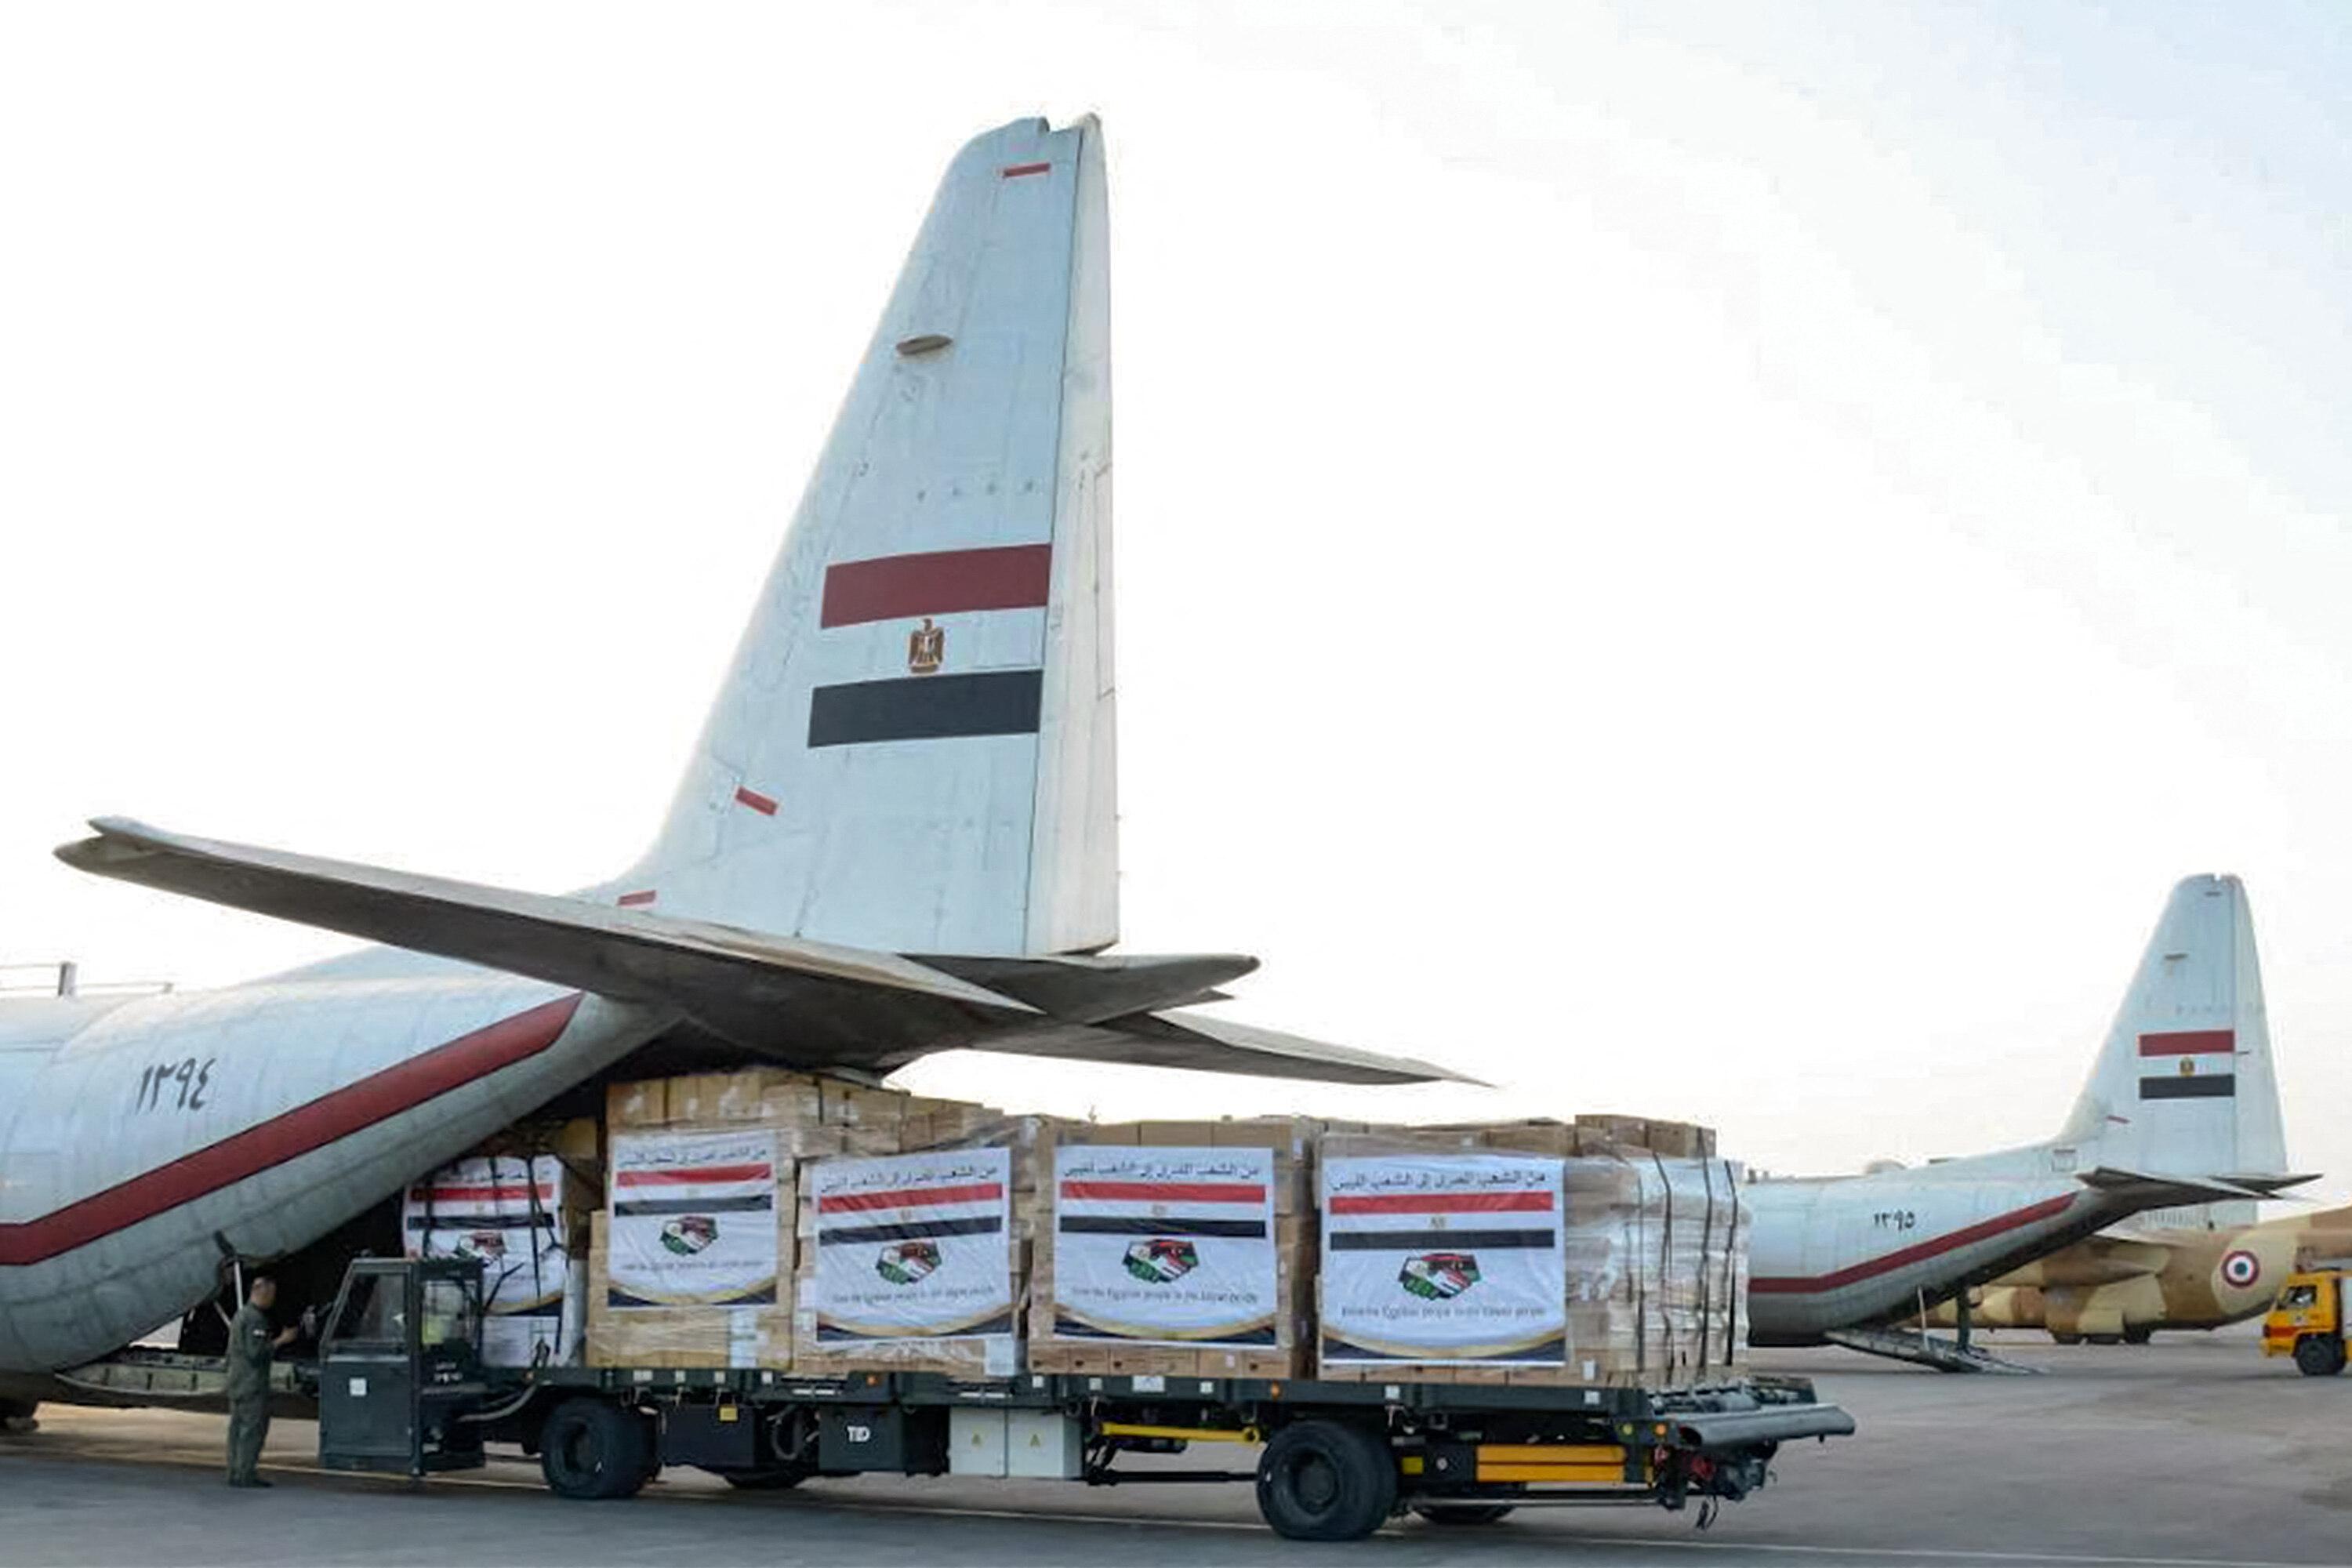 Ajuda humanitária fornecida pelo Egito aos desabrigados na Líbia. Avião egípcio Force C-130 Hercules na Base Aérea de Almaza, no leste do Cairo.